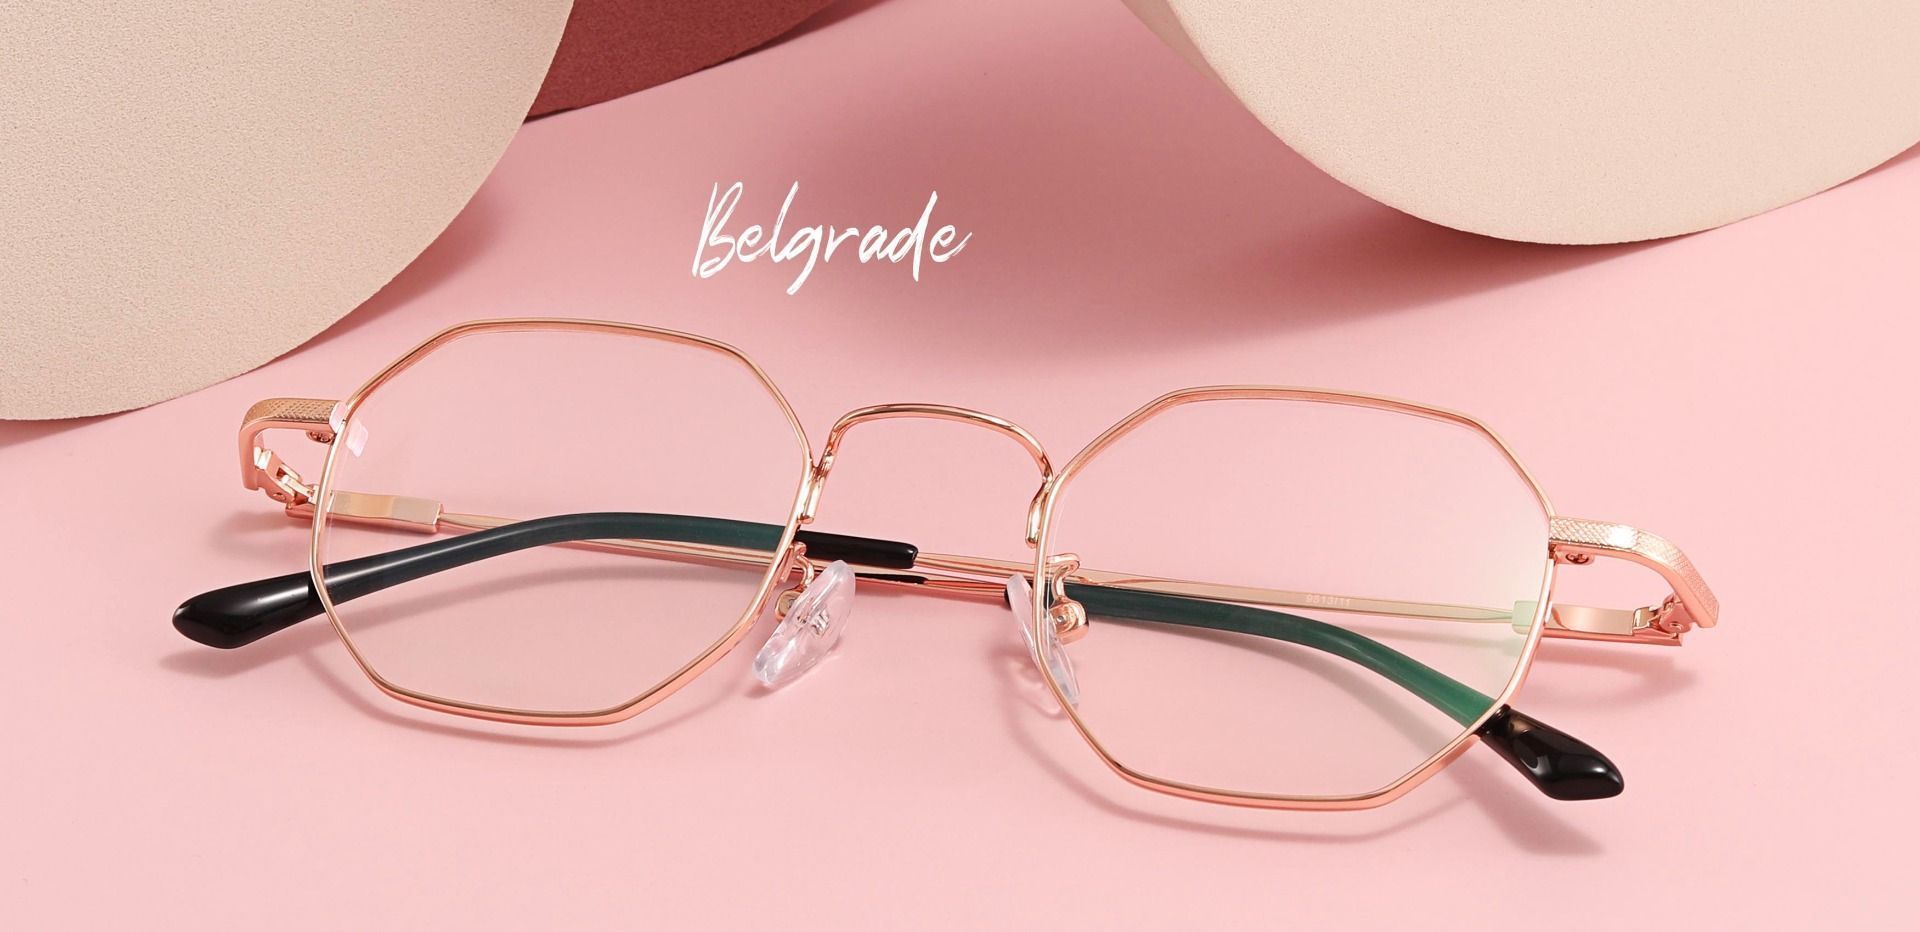 Belgrade Geometric Prescription Glasses Rose Gold Women S Eyeglasses Payne Glasses